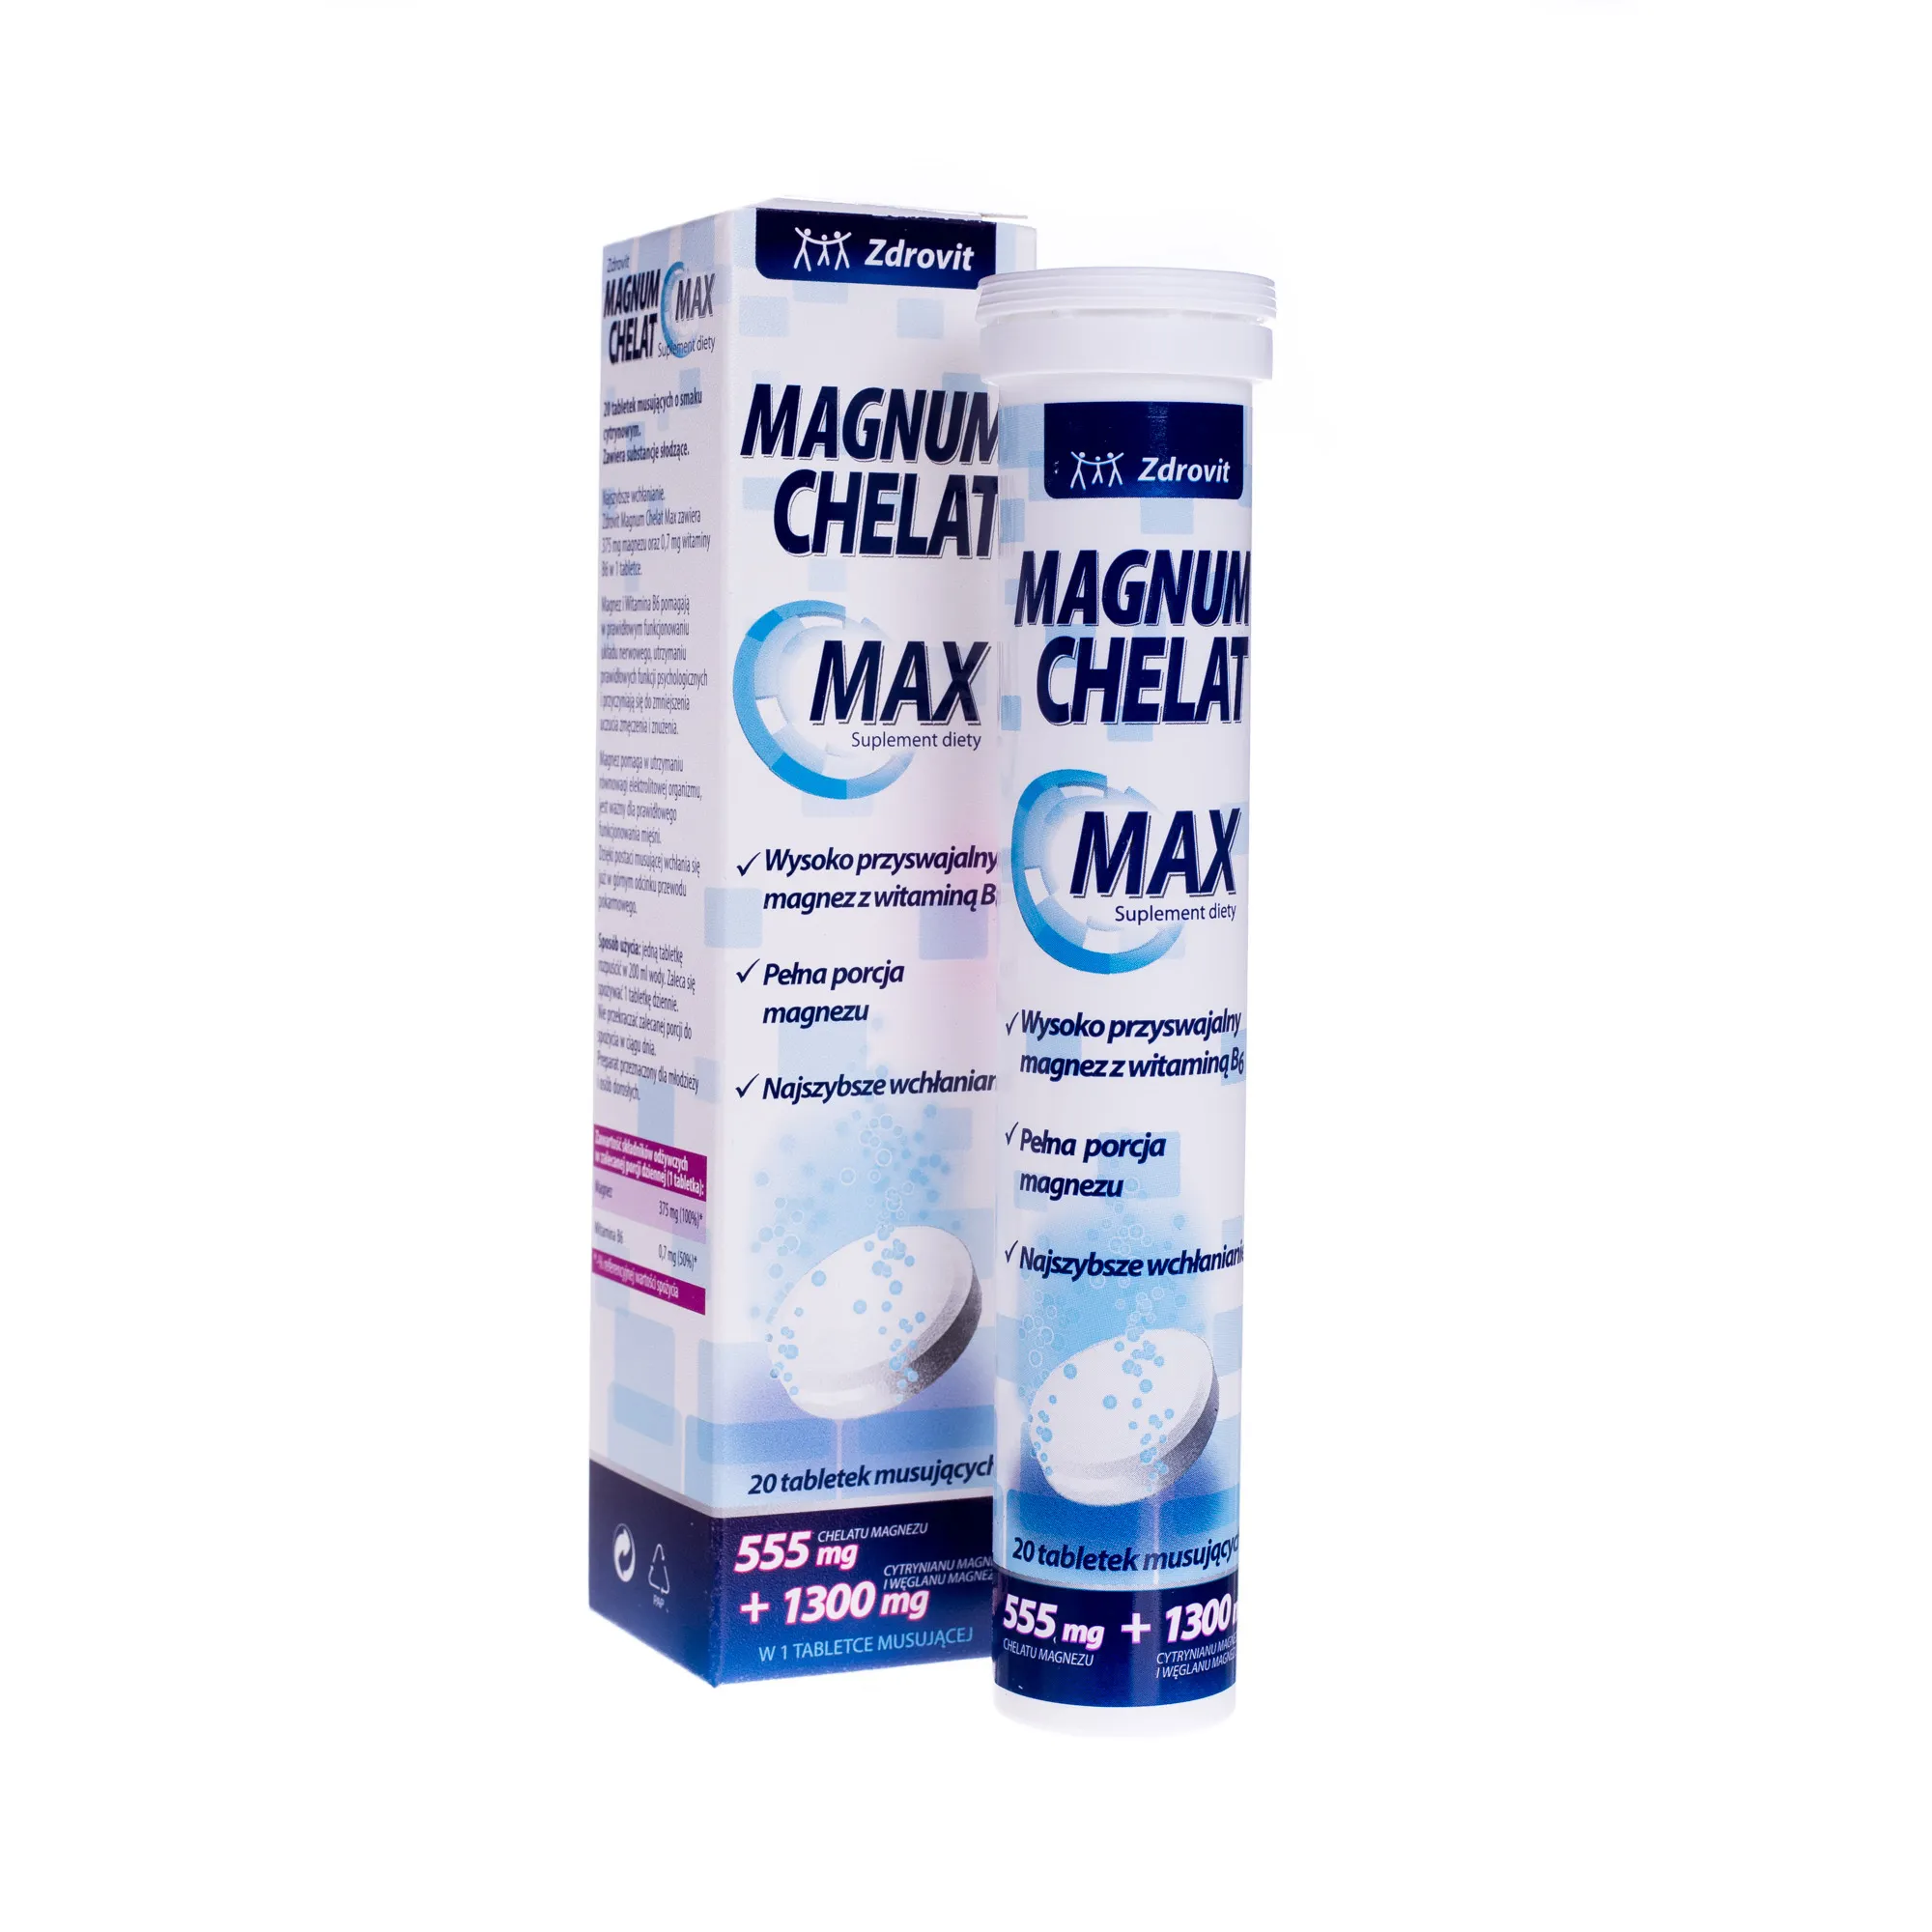 Magnum Chelat Max, suplement diety, 20 tabletek musujących 